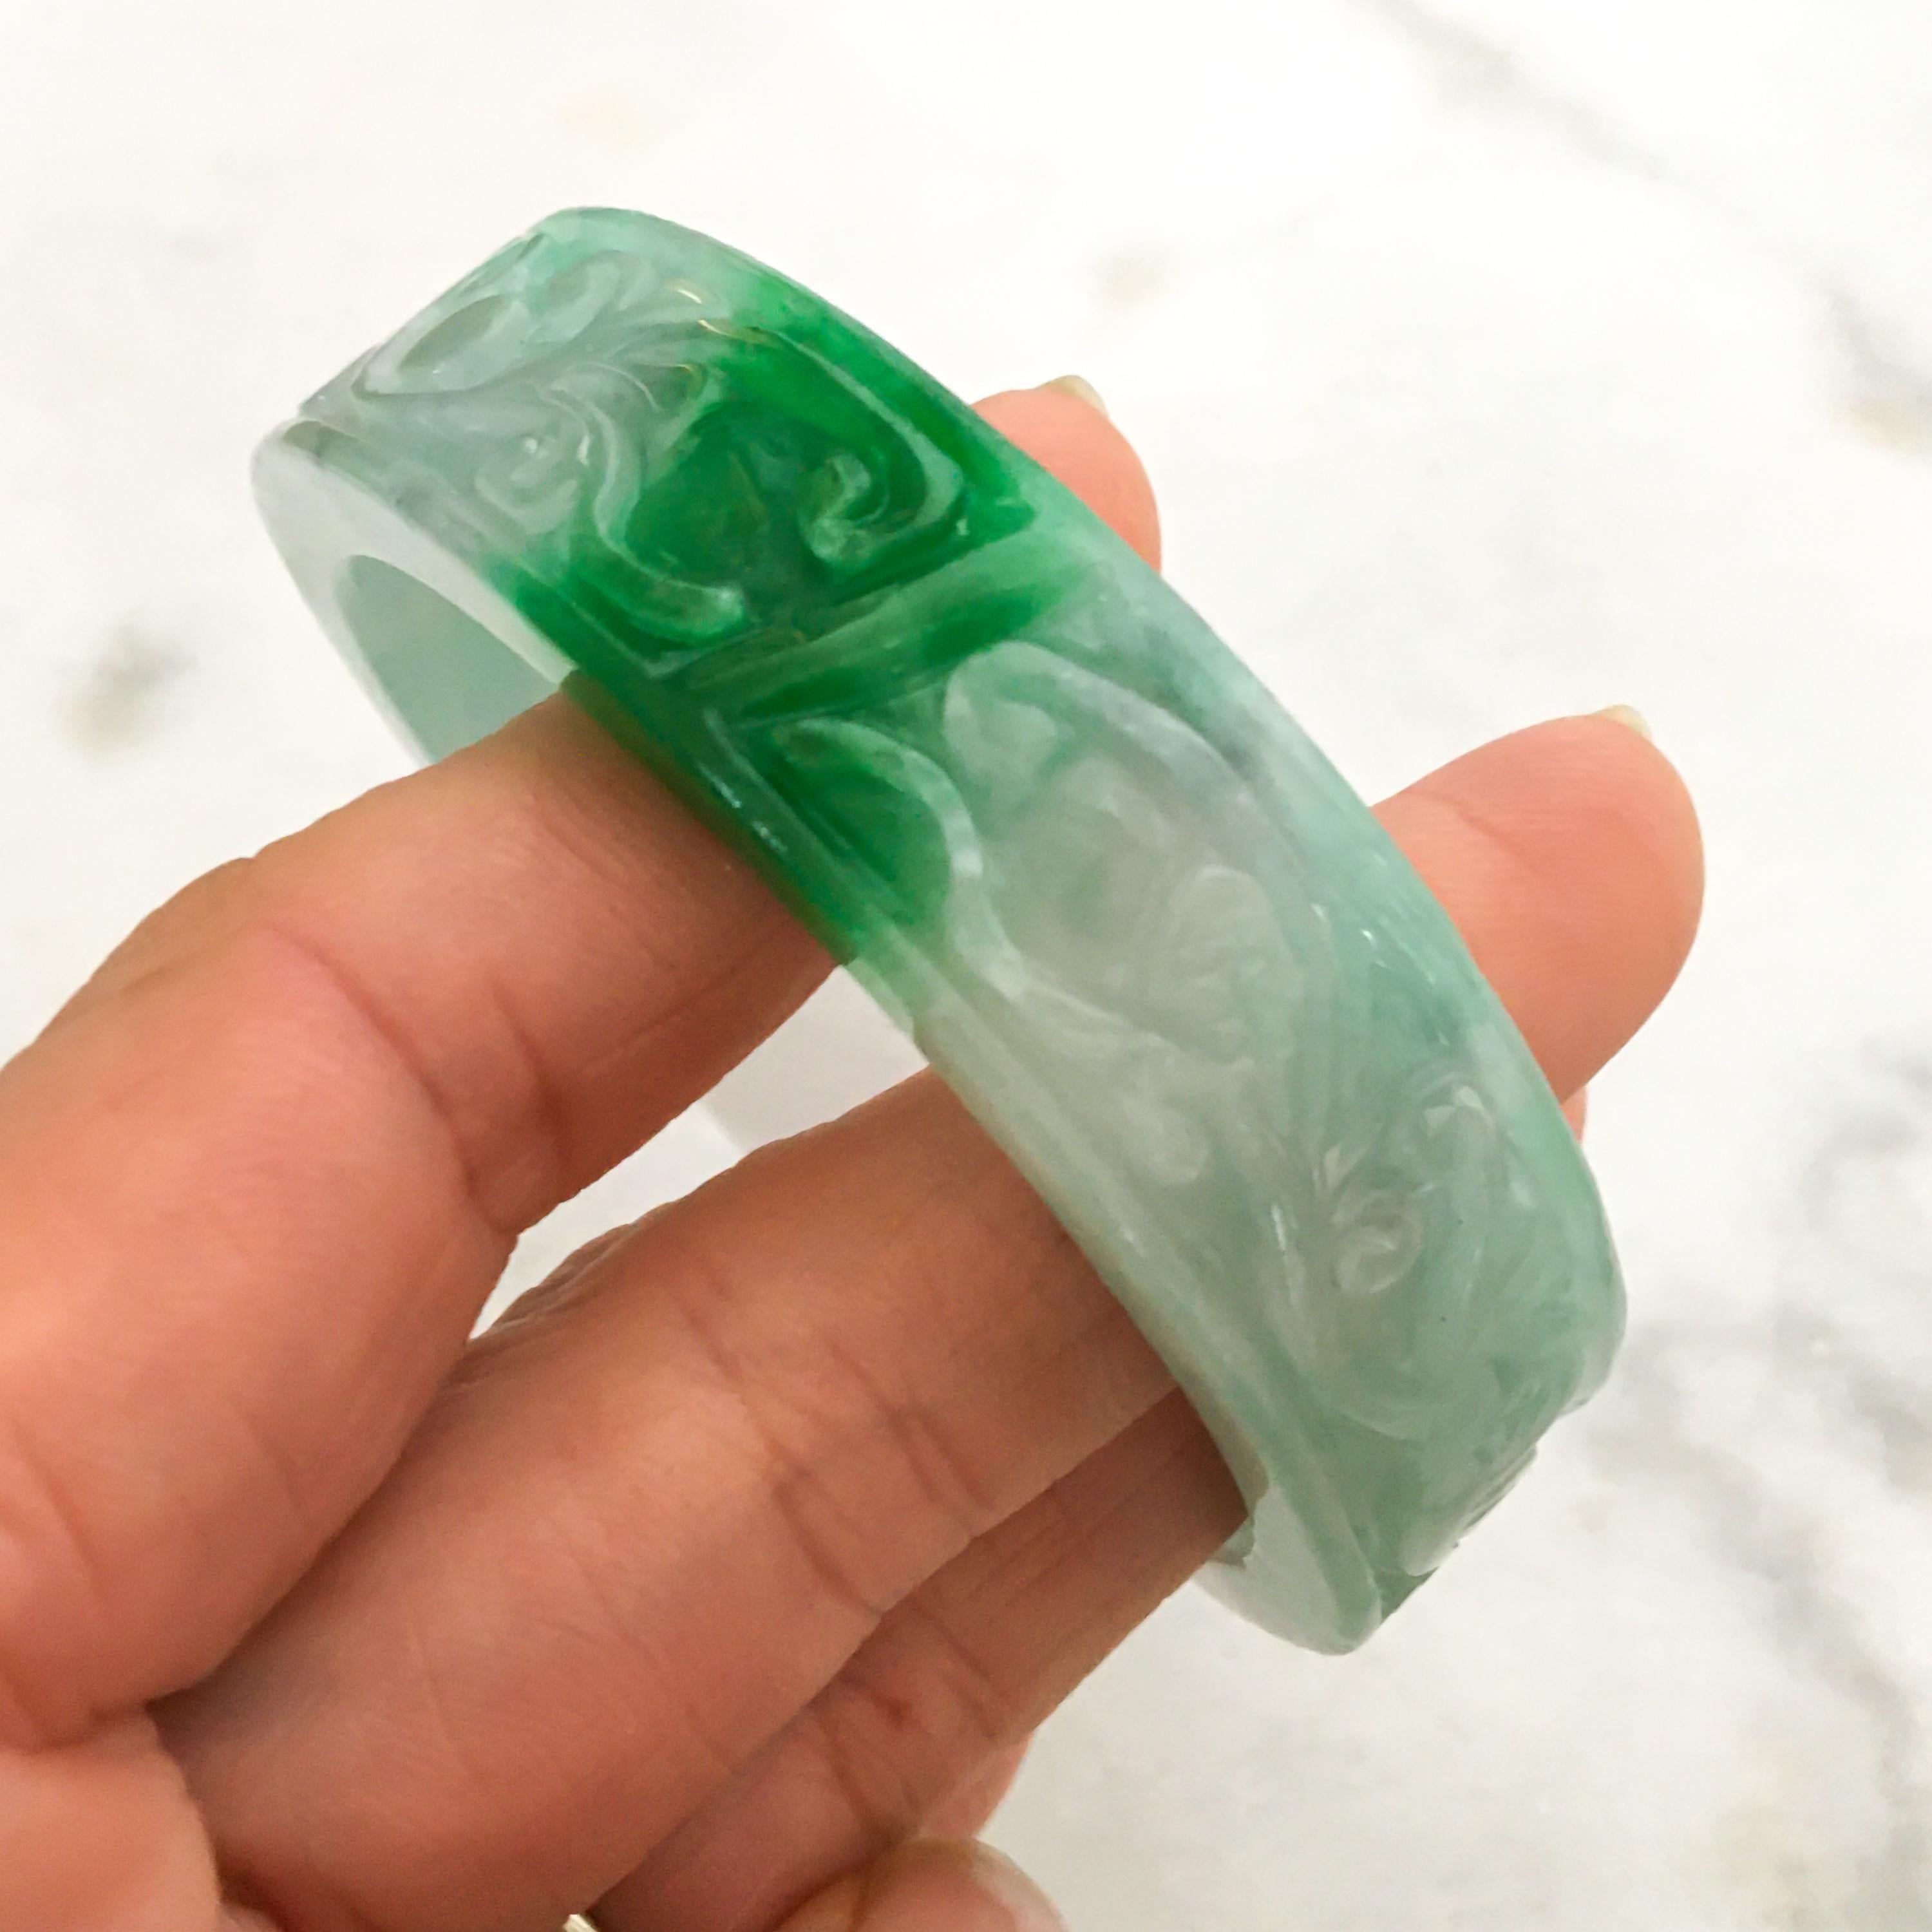 Dieser natürliche Jadeit Jade geschnitzt Armreif Armband hat eine schöne transluzente gesprenkelt grün und weiß Farbe. Dieser Armreif aus birmanischer Jade ist wunderschön geschnitzt und stammt aus den 1950er bis 1960er Jahren. 

Die Maße des